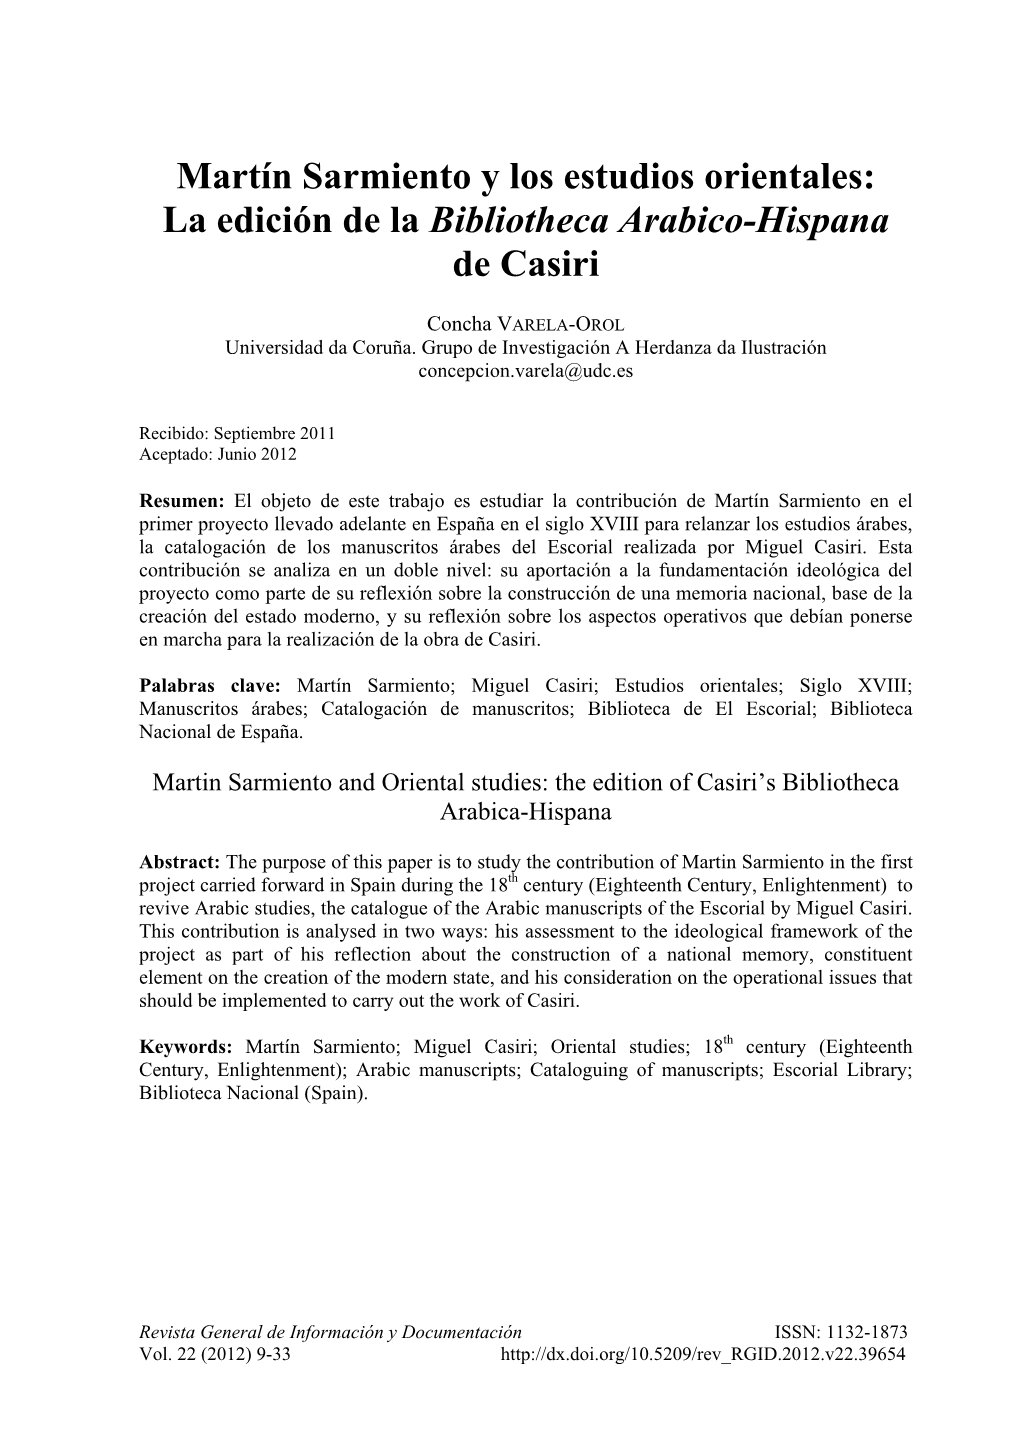 Martín Sarmiento Y Los Estudios Orientales: La Edición De La Bibliotheca Arabico-Hispana De Casiri